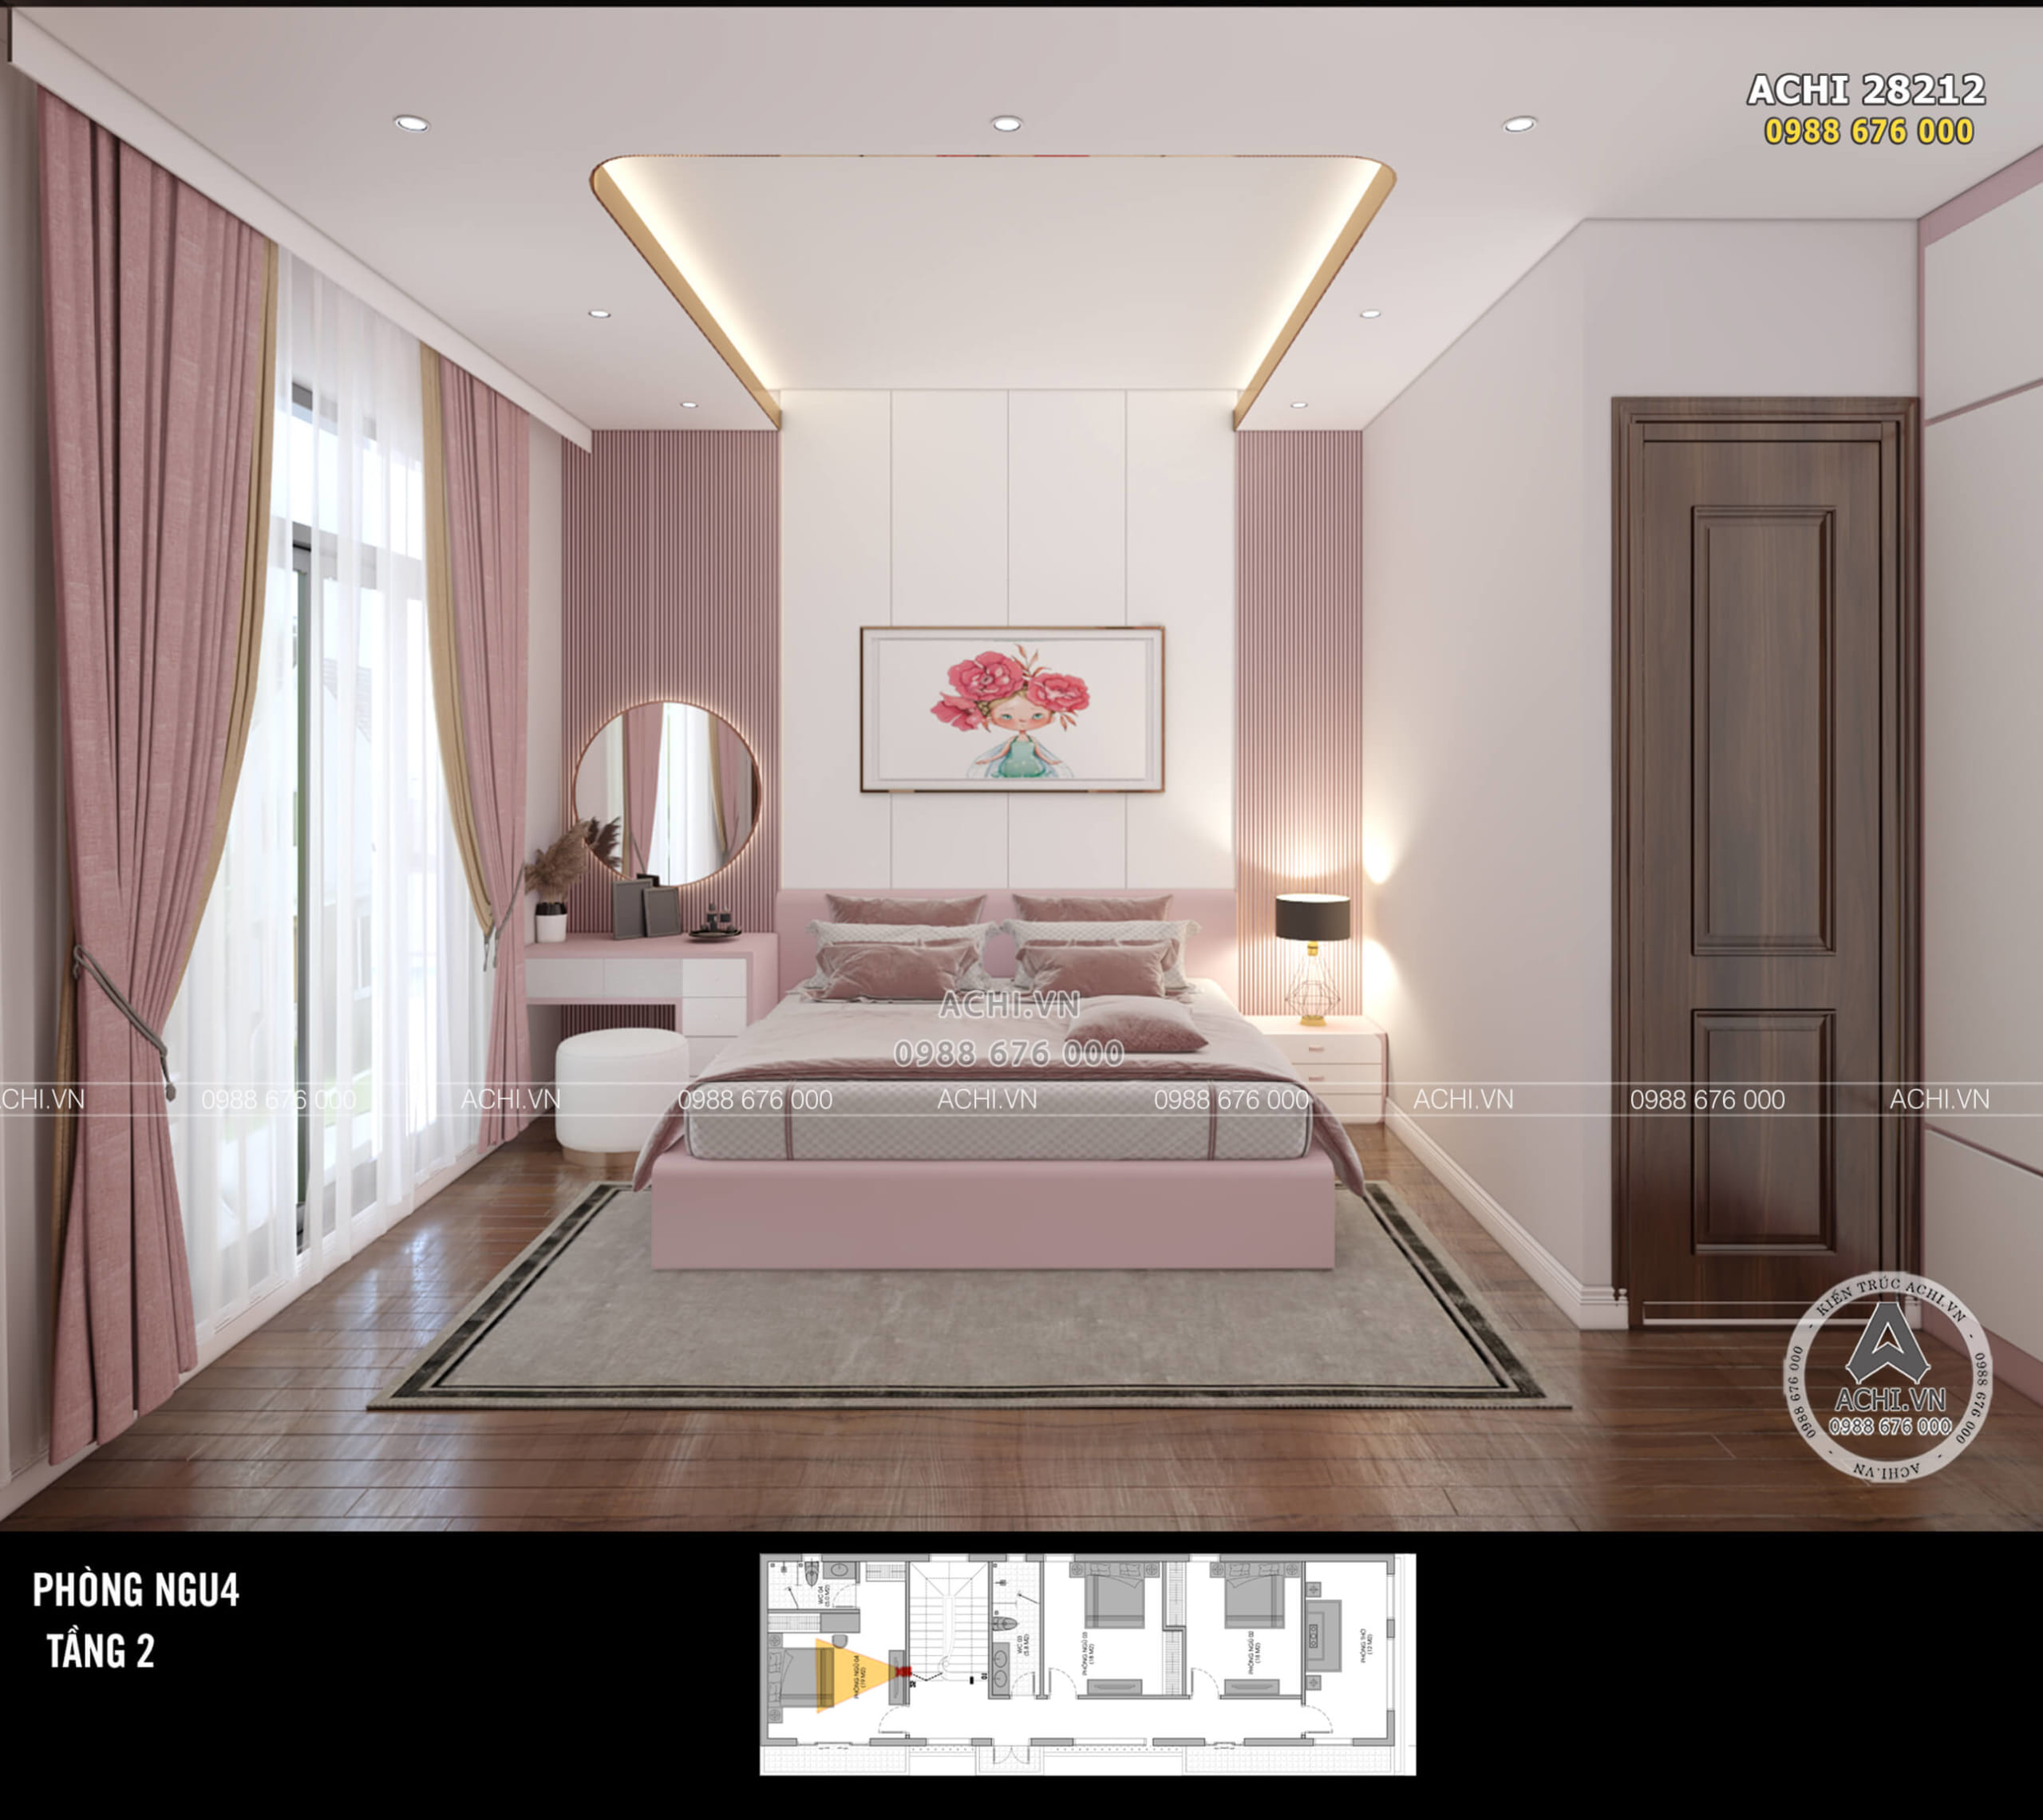 Mẫu thiết kế nội thất phòng ngủ bé gái phong cách kiến trúc hiện đại đẹp